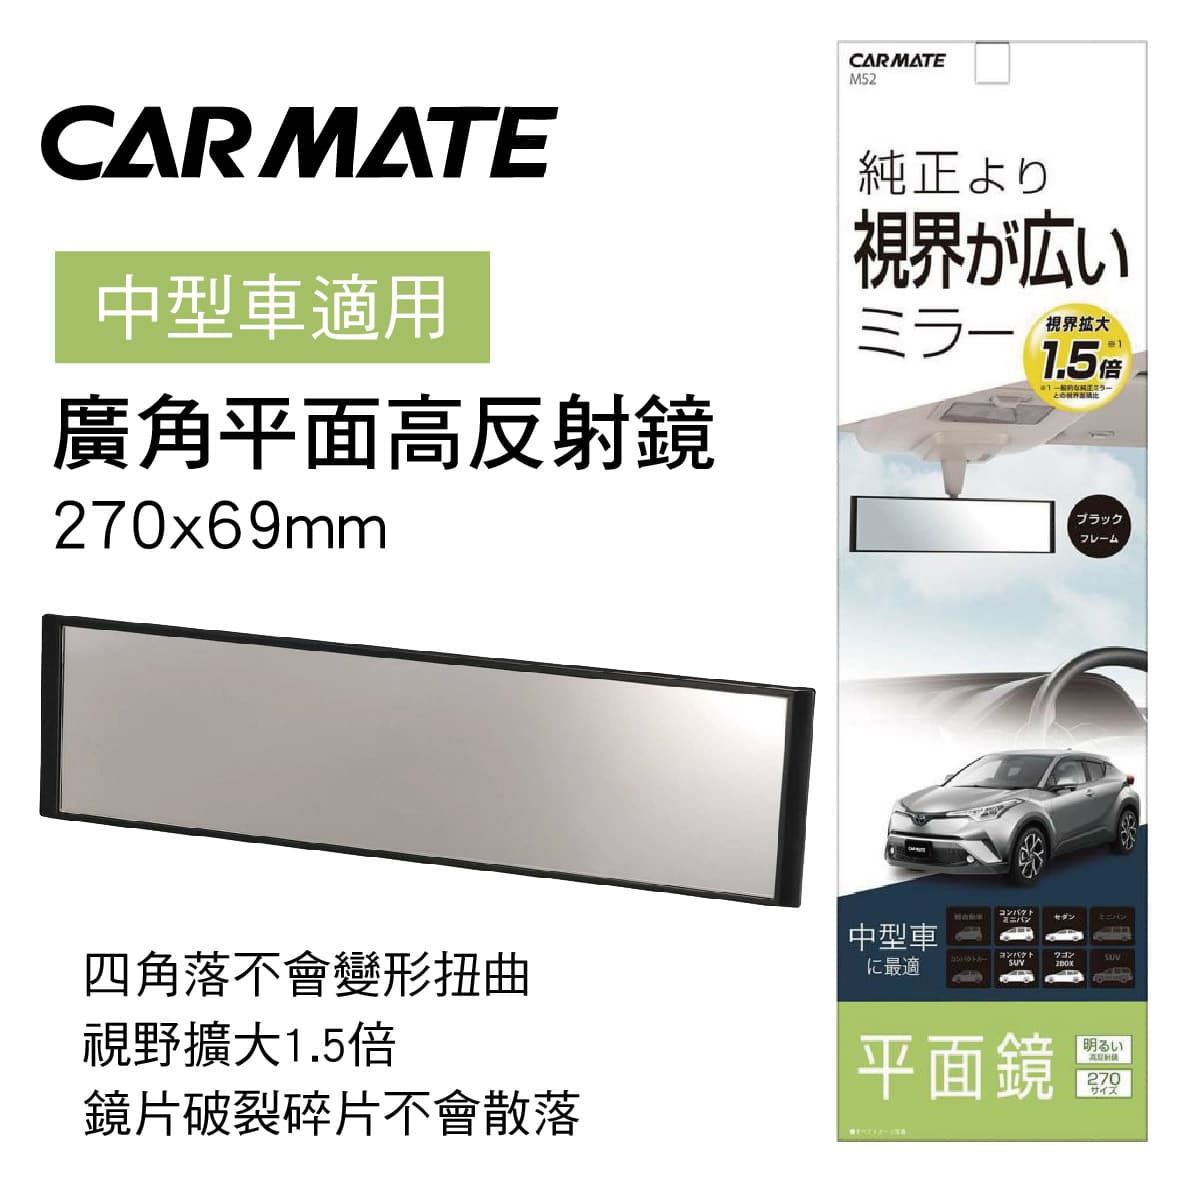 真便宜 CARMATE M52 廣角平面高反射鏡27x6.9cm